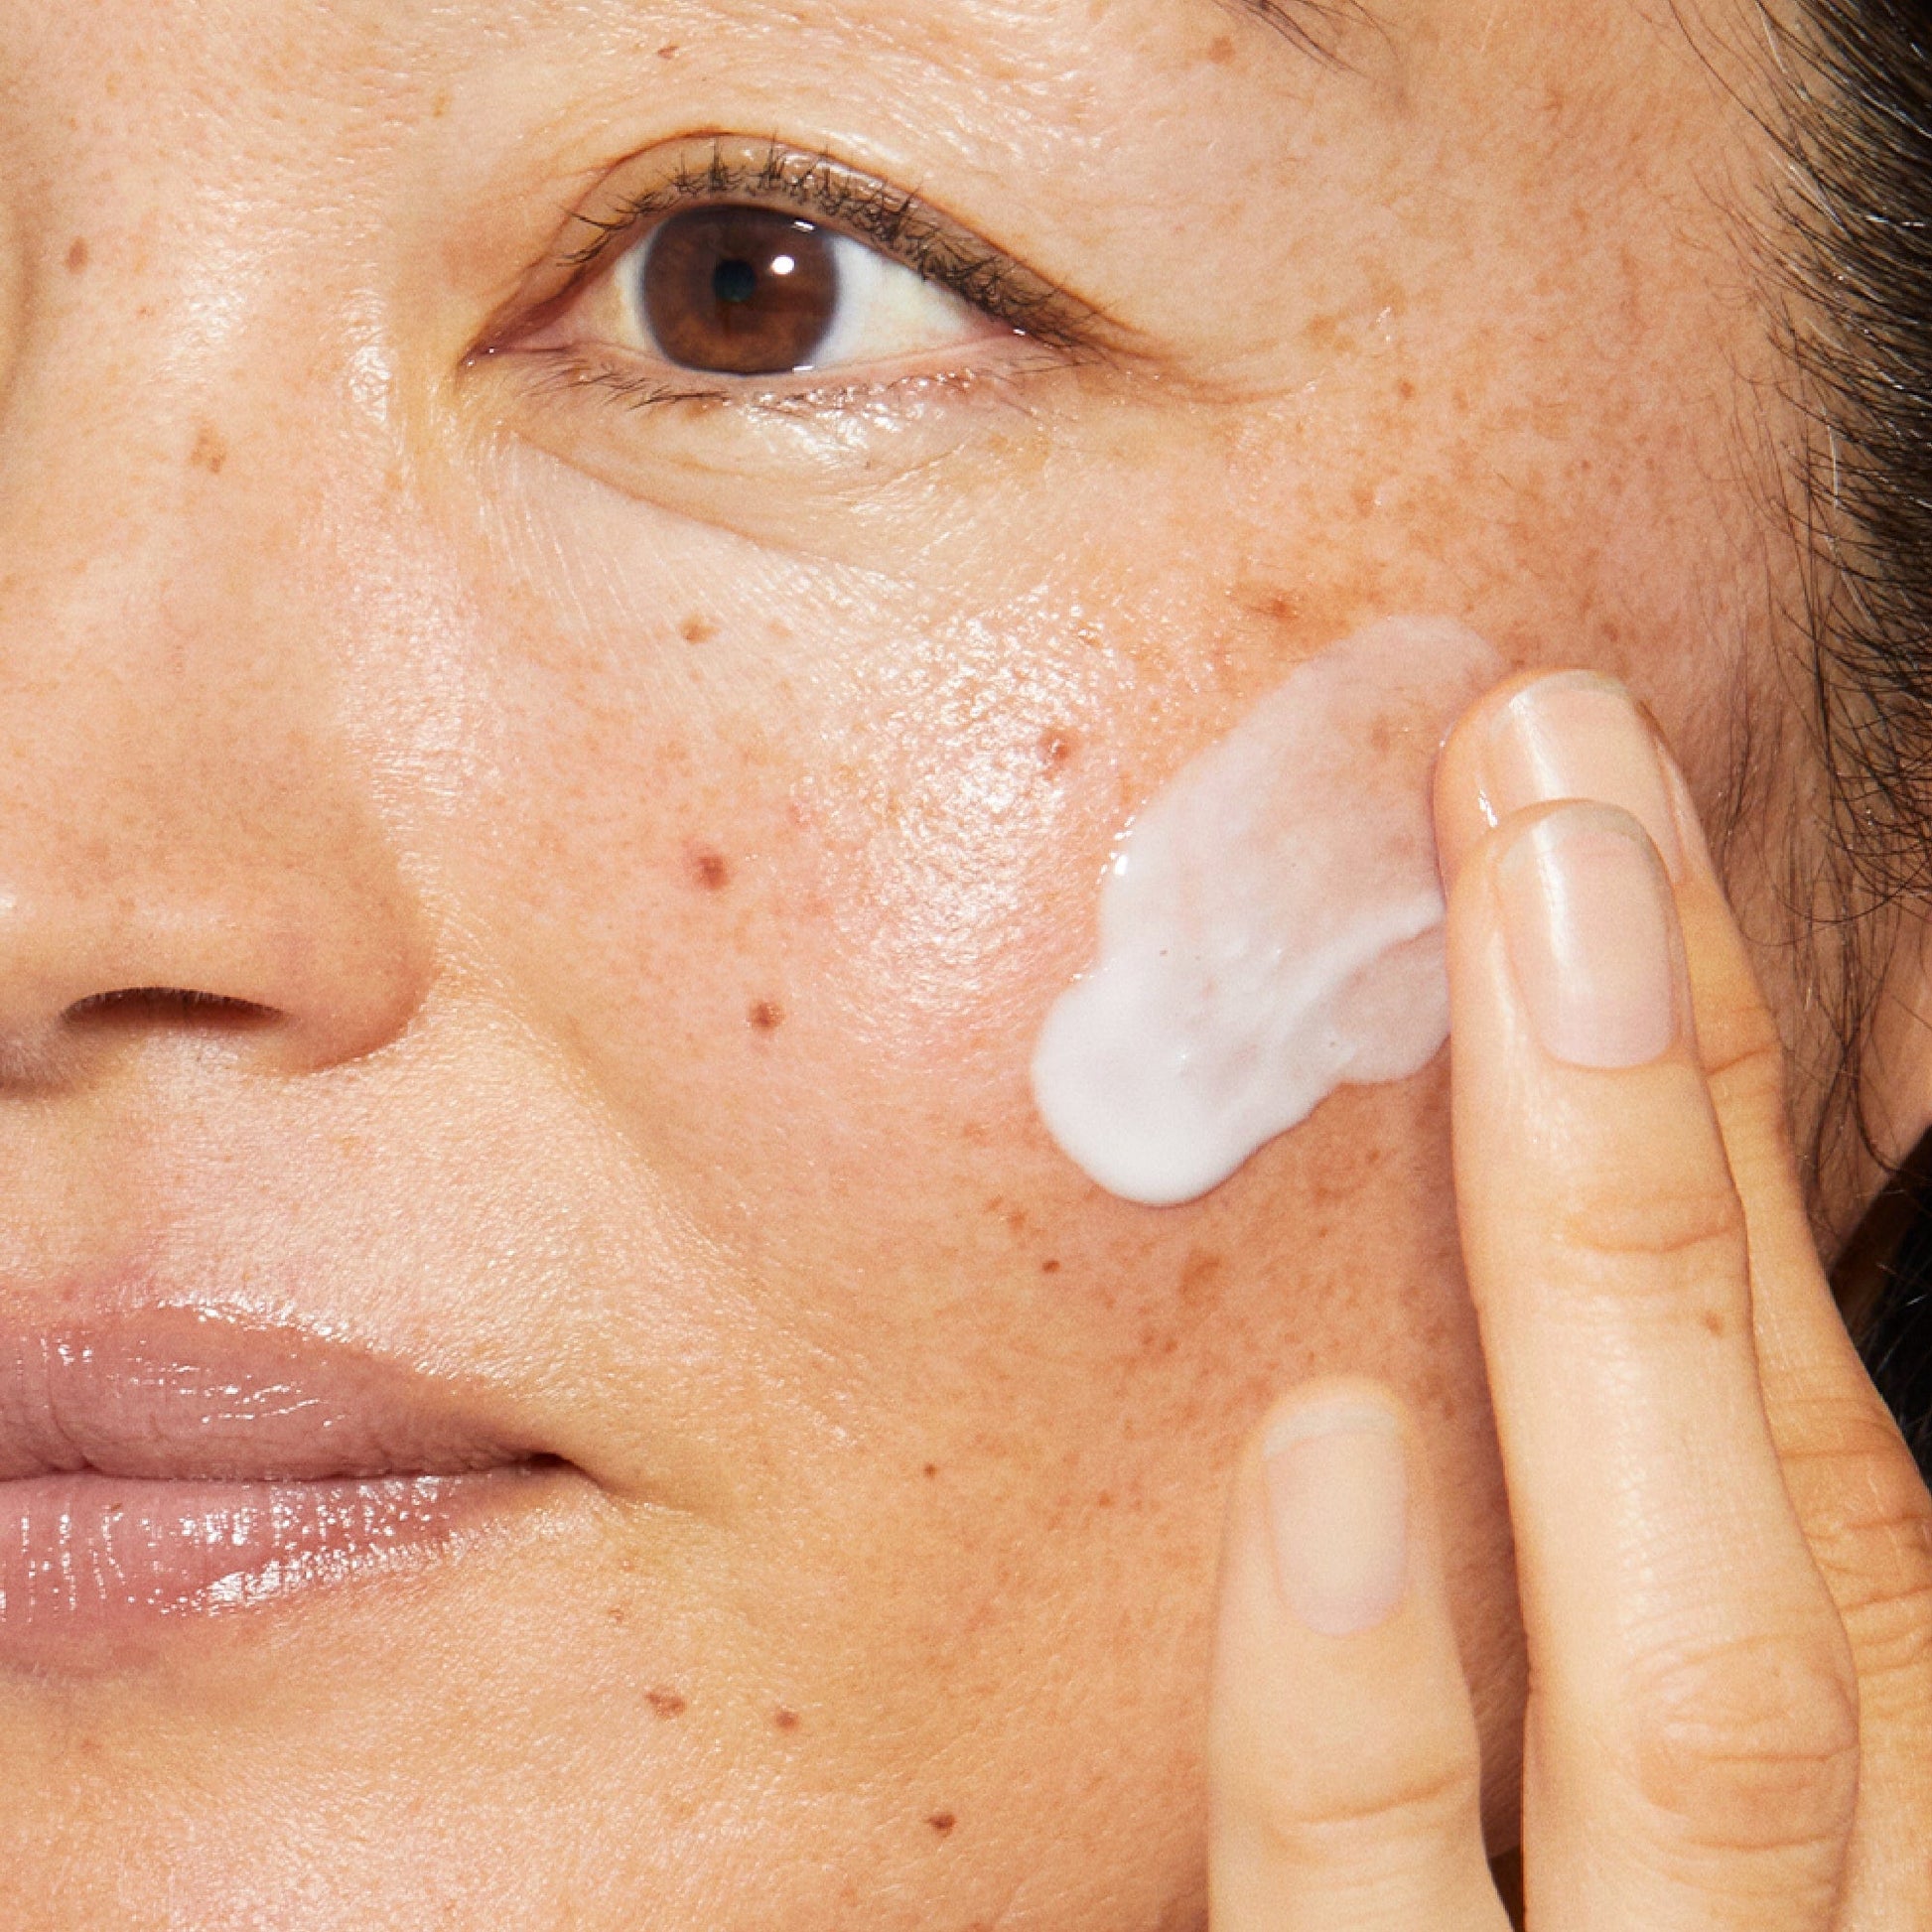 Nahaufnahme des Gesichts einer Person, die Hautpflegecreme auf die Wange aufträgt.